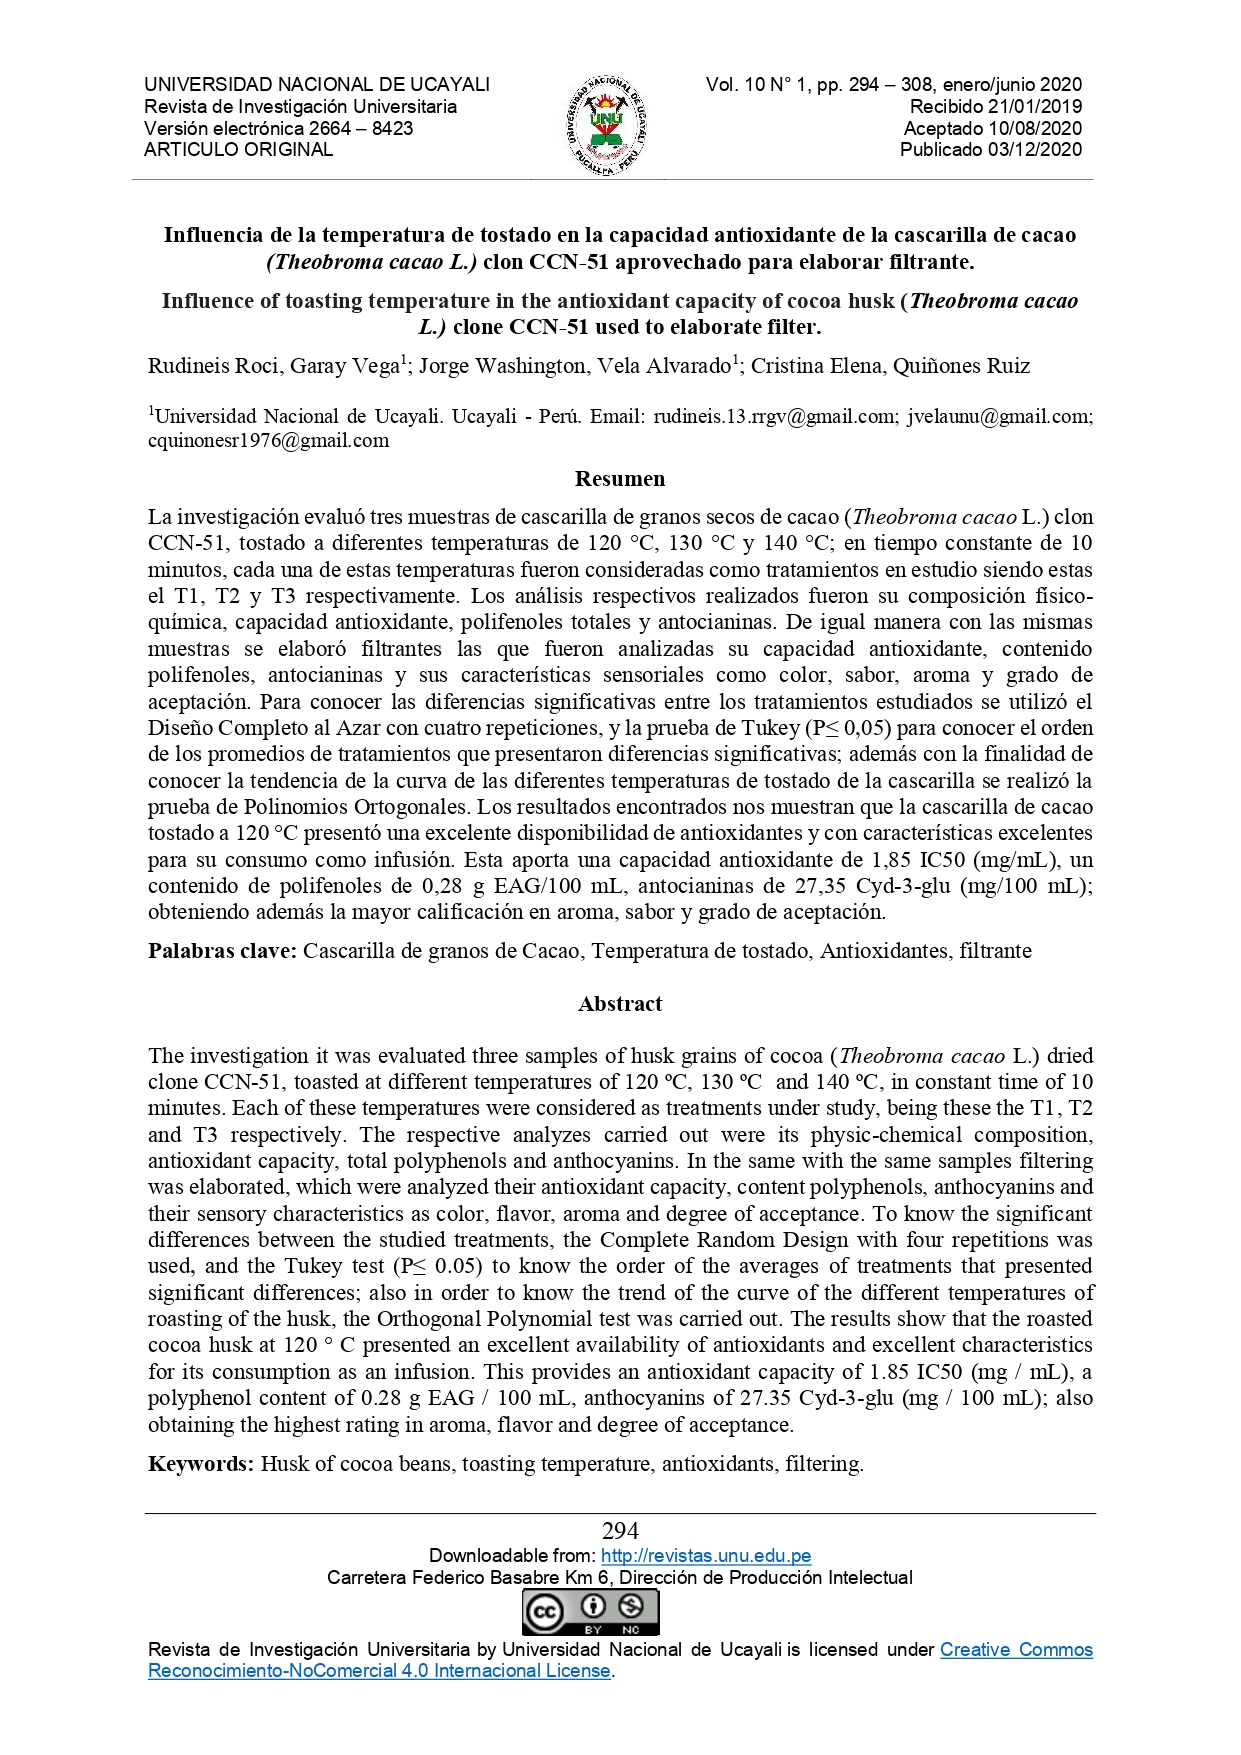 Influencia de la temperatura de tostado en la capacidad antioxidante de la cascarilla de cacao (Theobroma cacao L.) clon CCN-51 aprovechado para elaborar filtrante